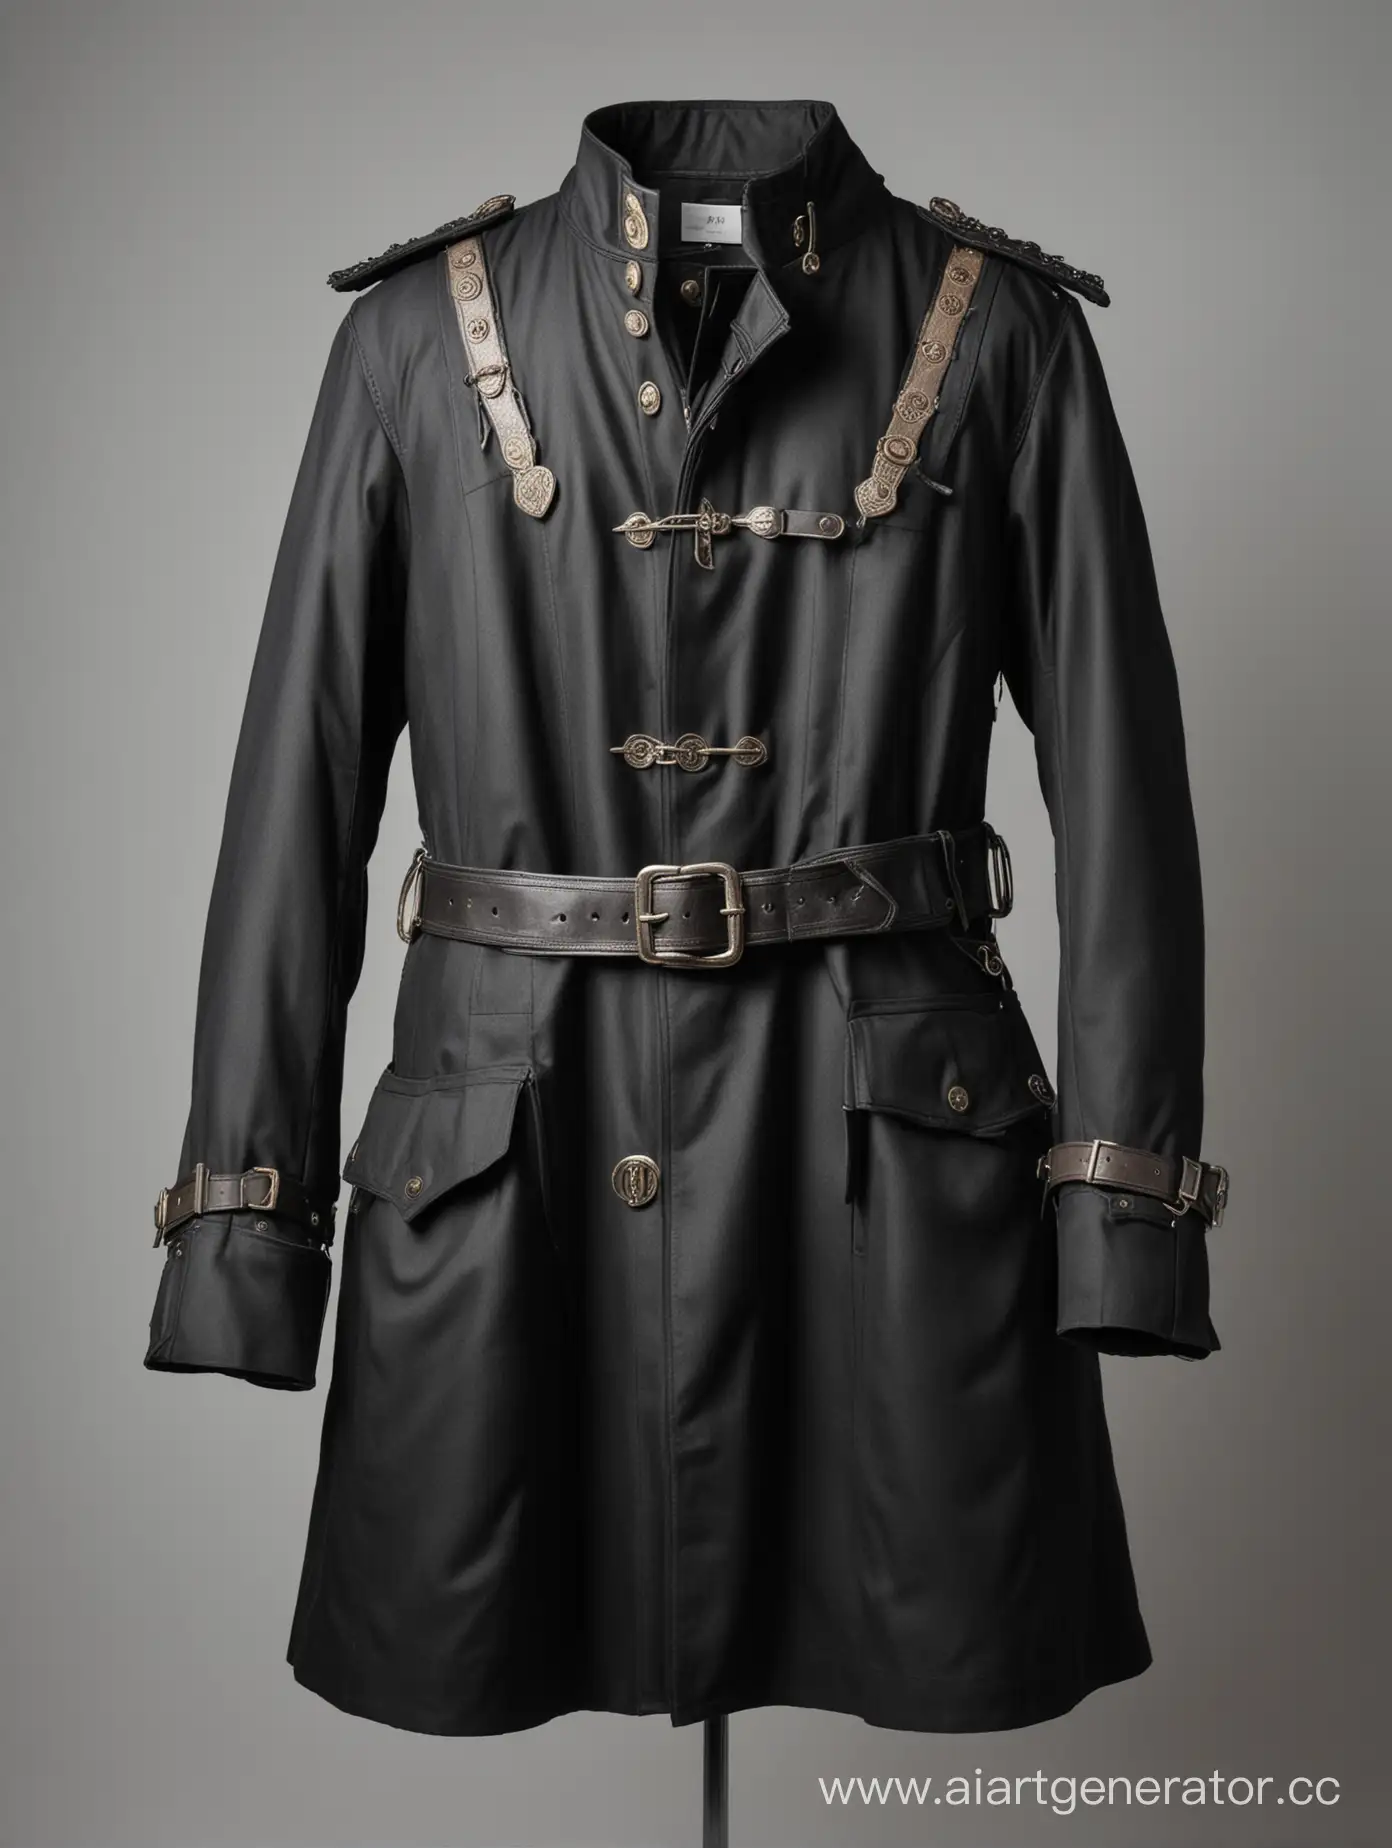 Пальто чёрное сшитое в стилистике средневековья и детектива. Много карманов и застëжек, ремешки на плечах. Белый фон